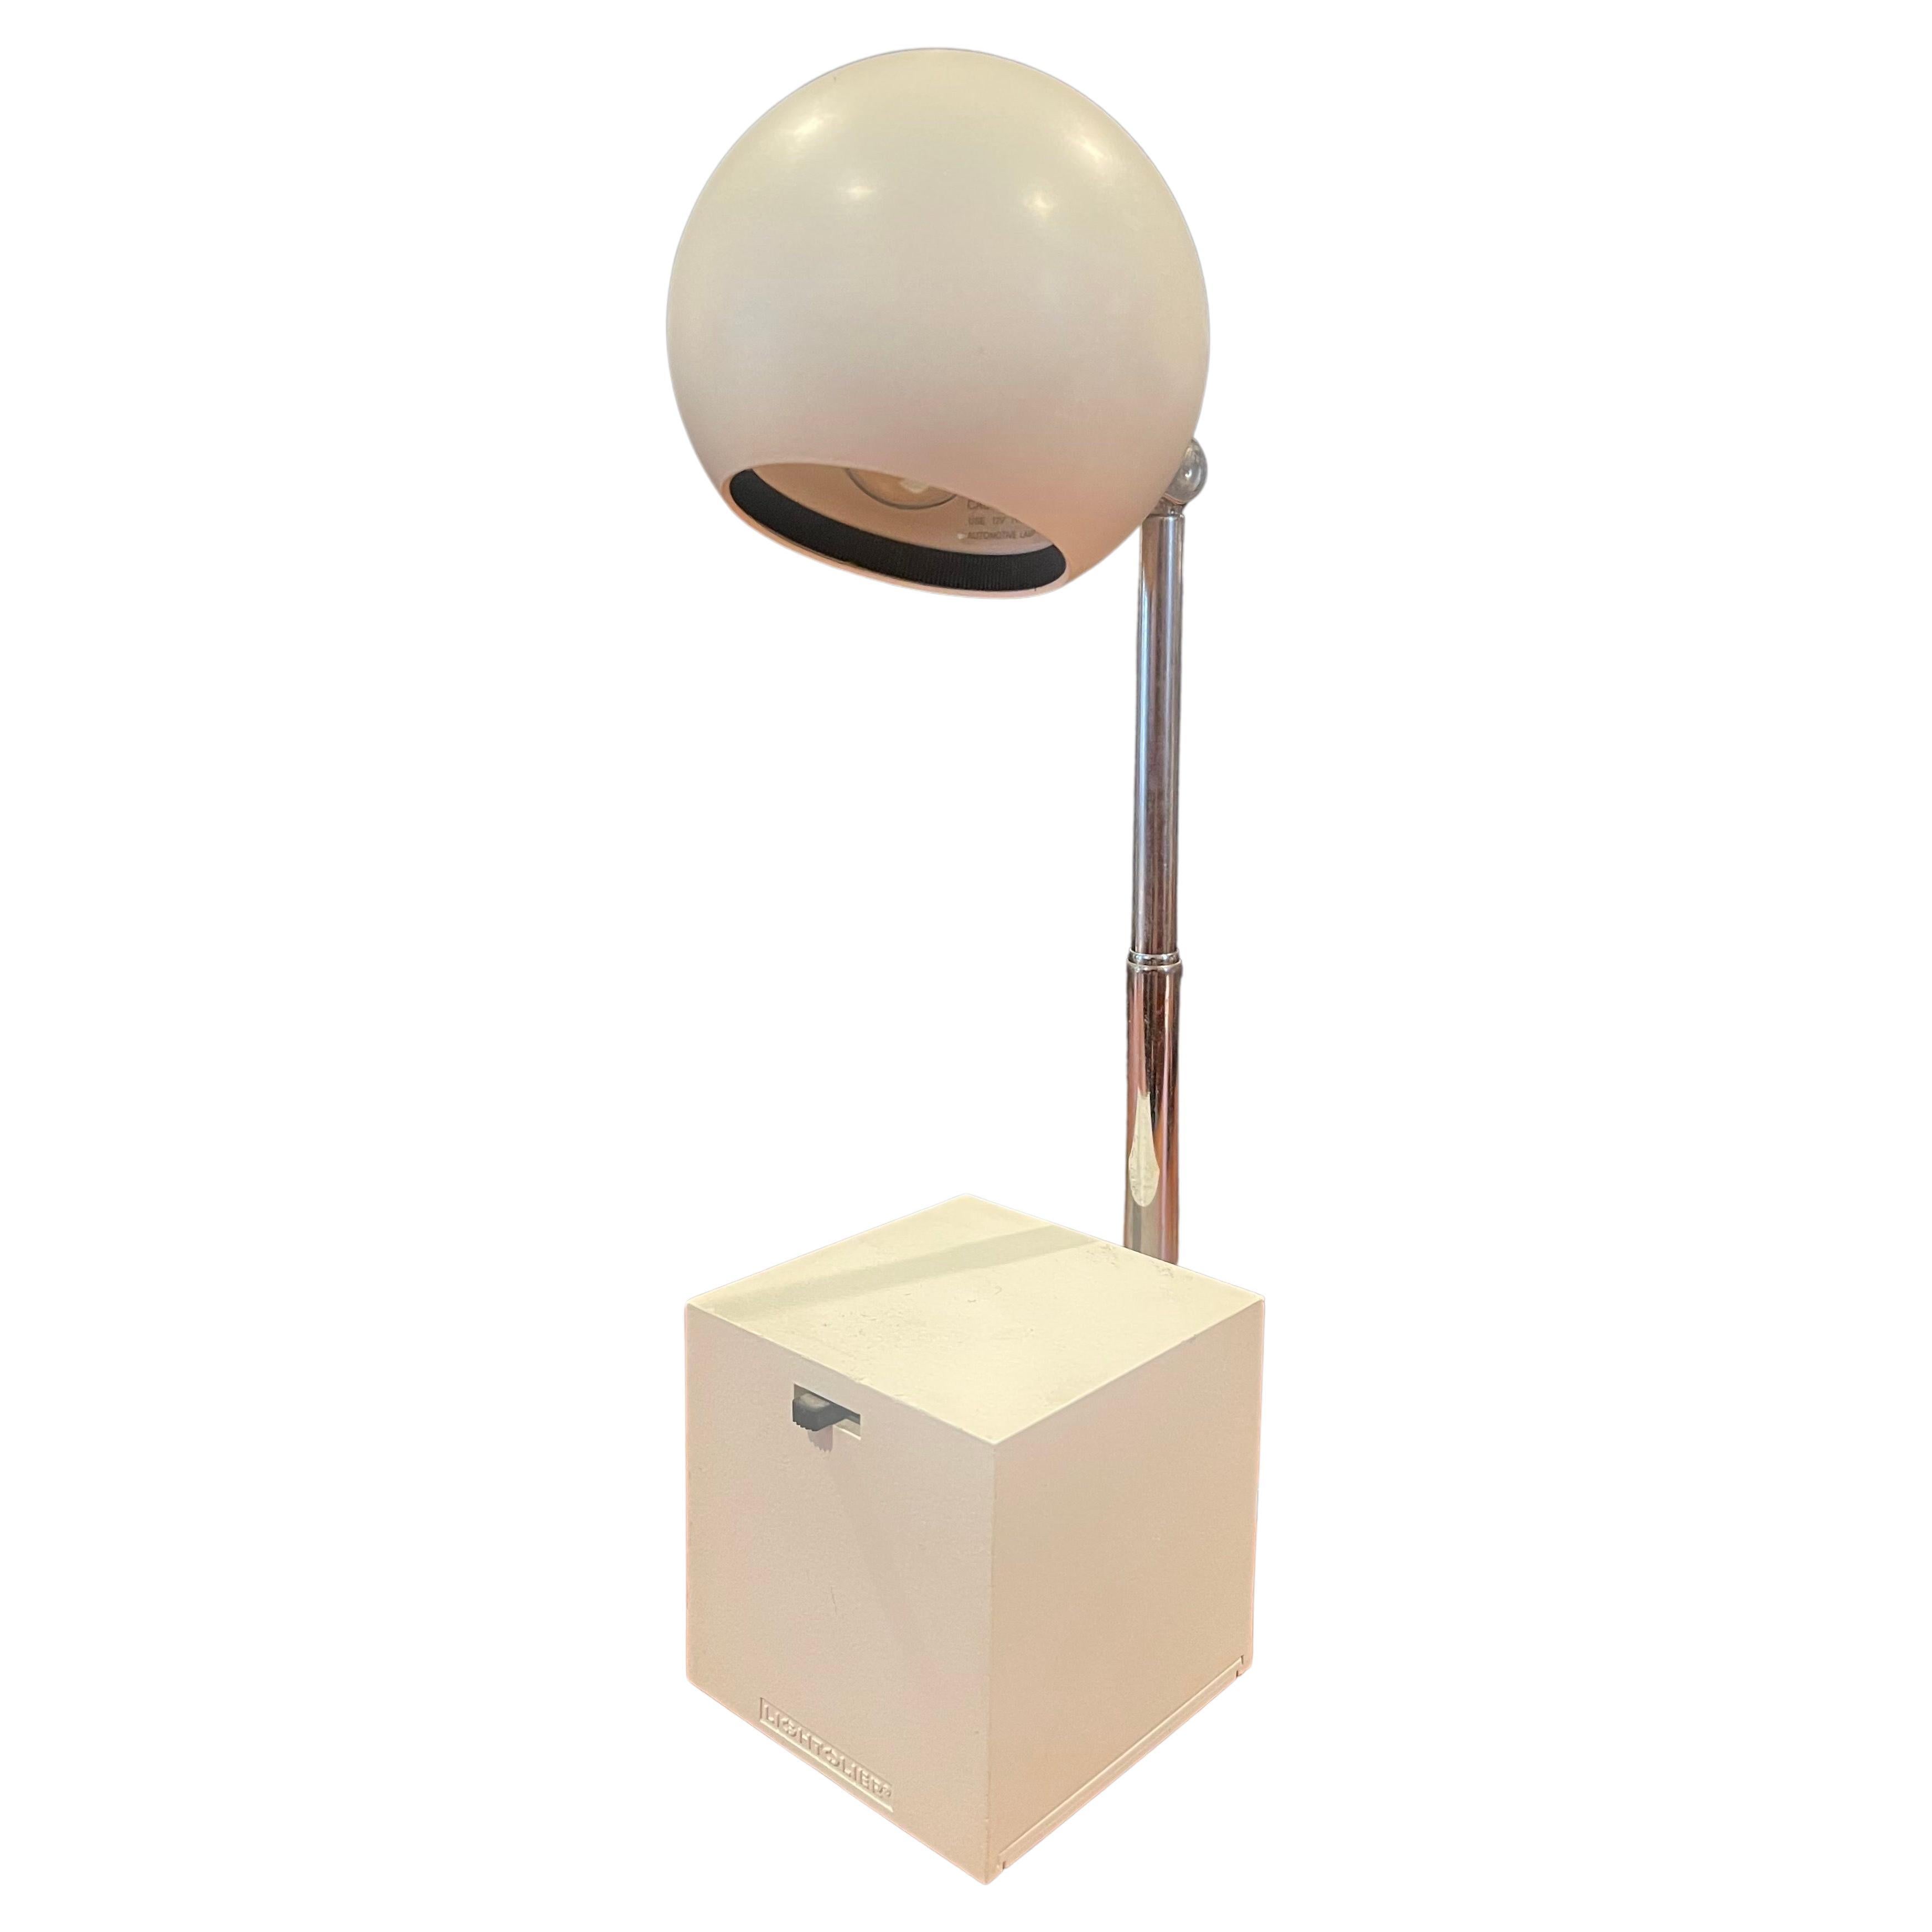 Lytegem Spherical Desk Lamp by Michael Lax for Lightoiler For Sale